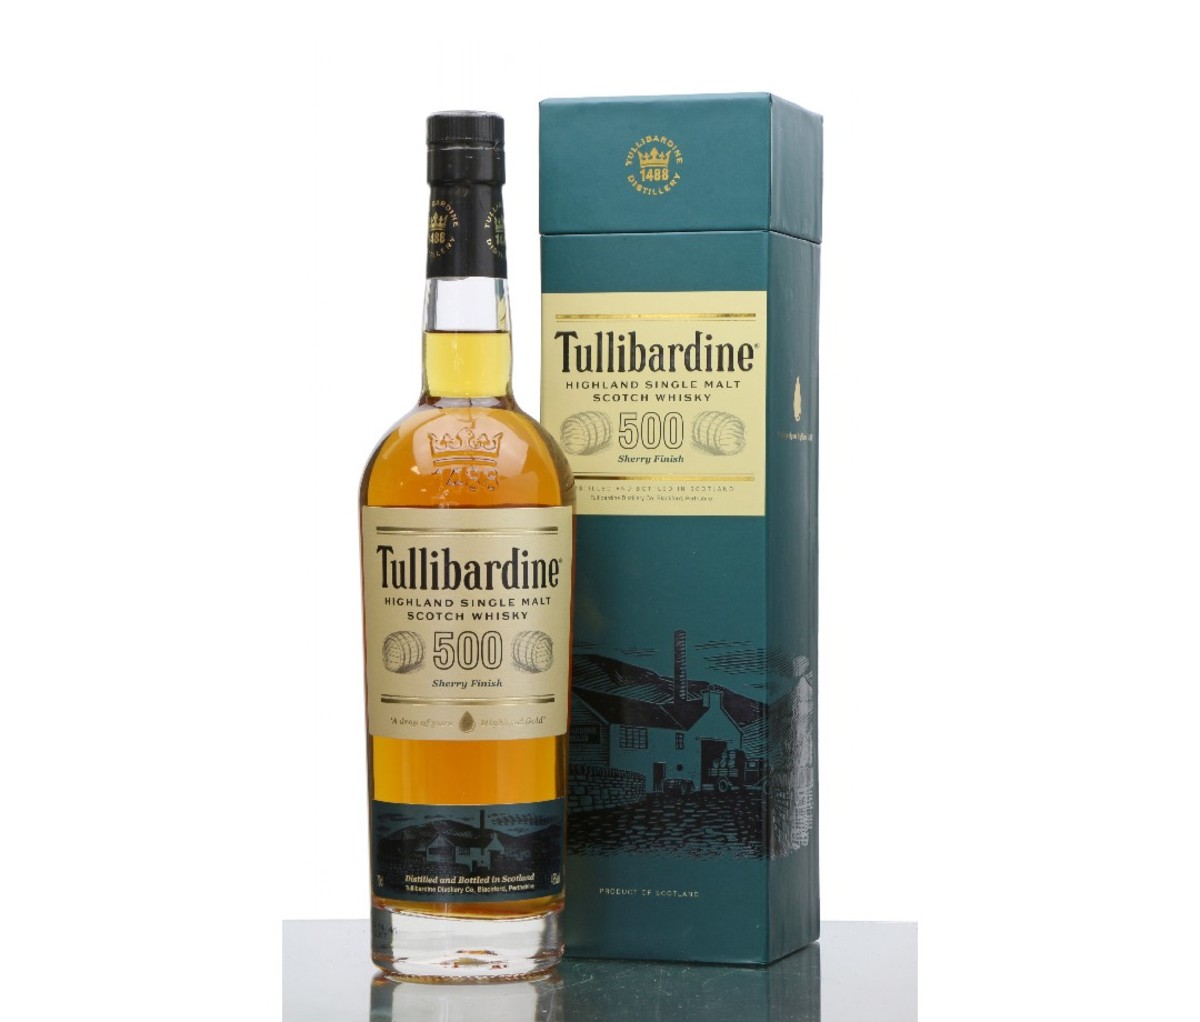 A bottle of Tullibardine 500 Sherry Finish whisky.